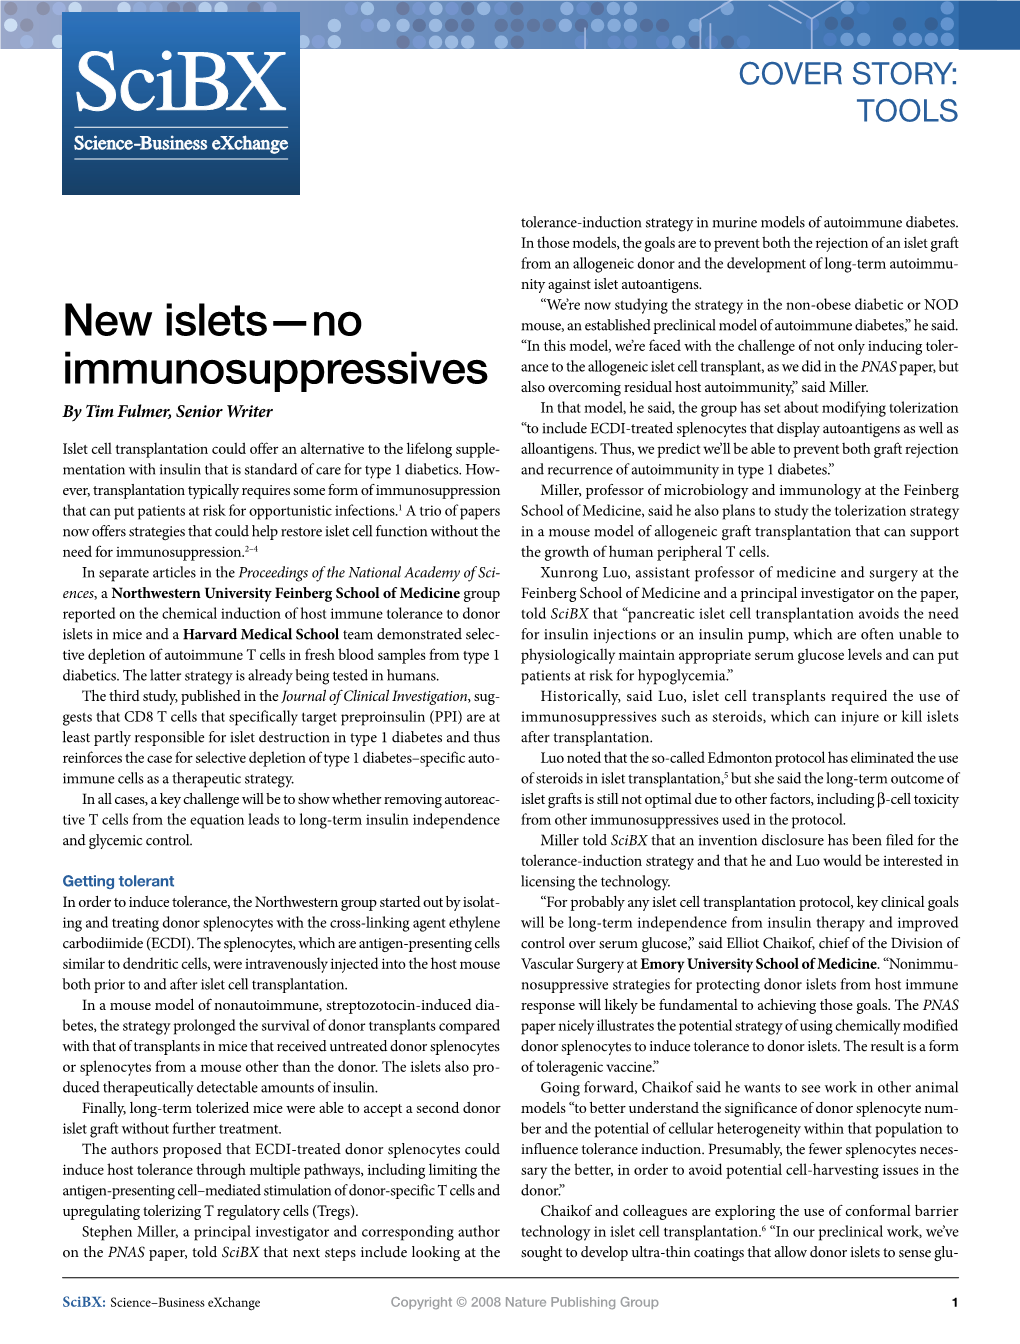 New Islets—No Immunosuppressives